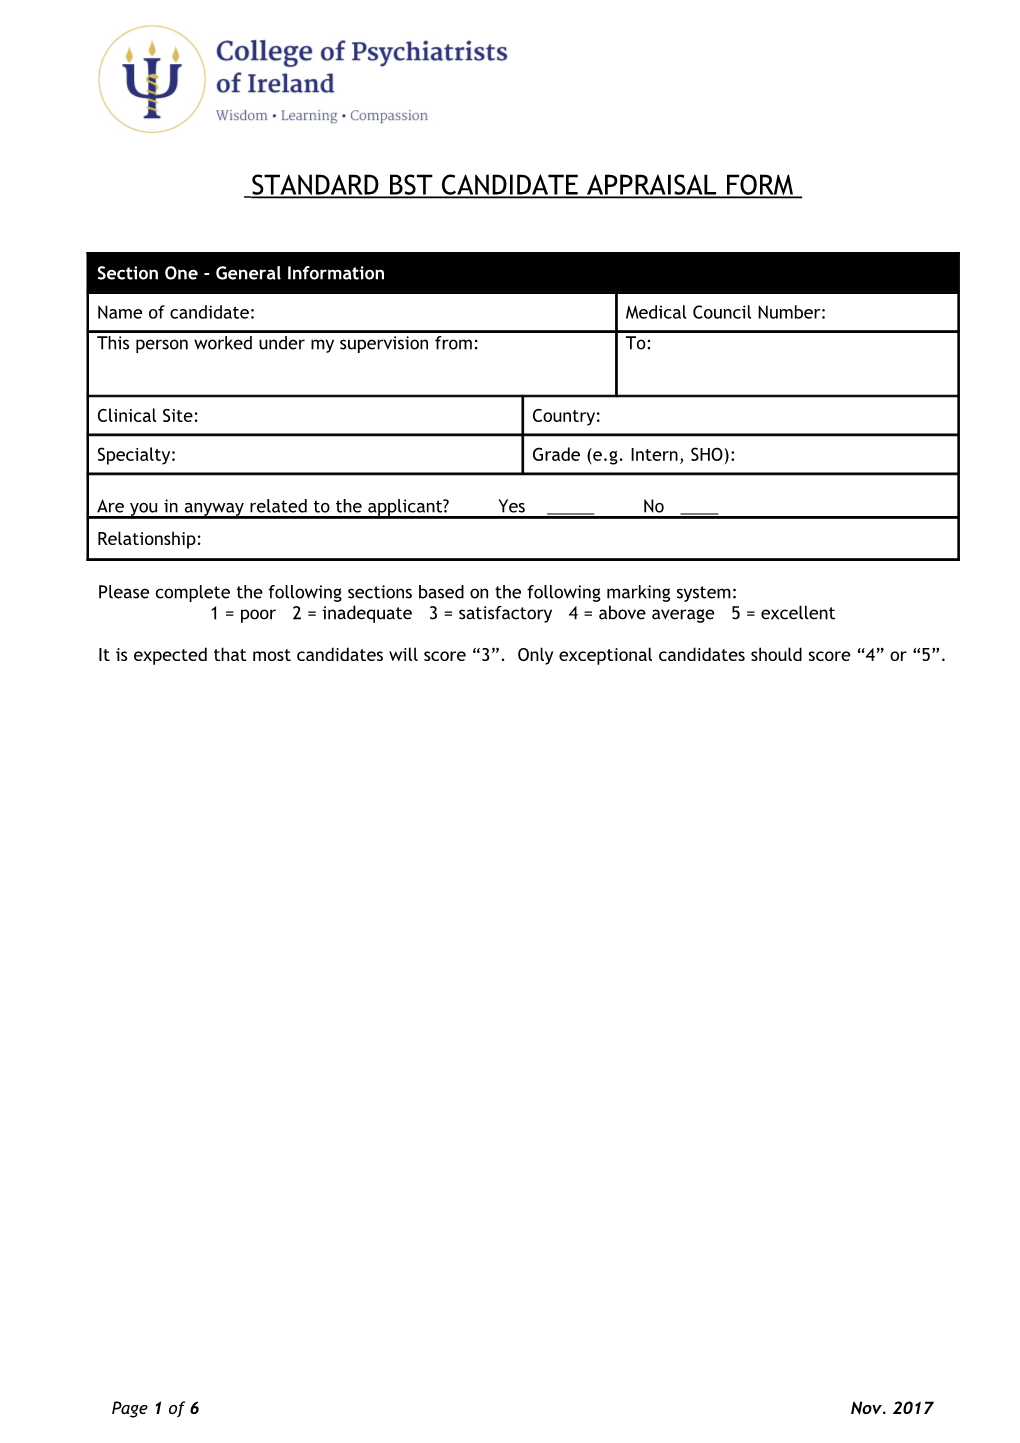 Standard Bst Candidate Appraisal Form